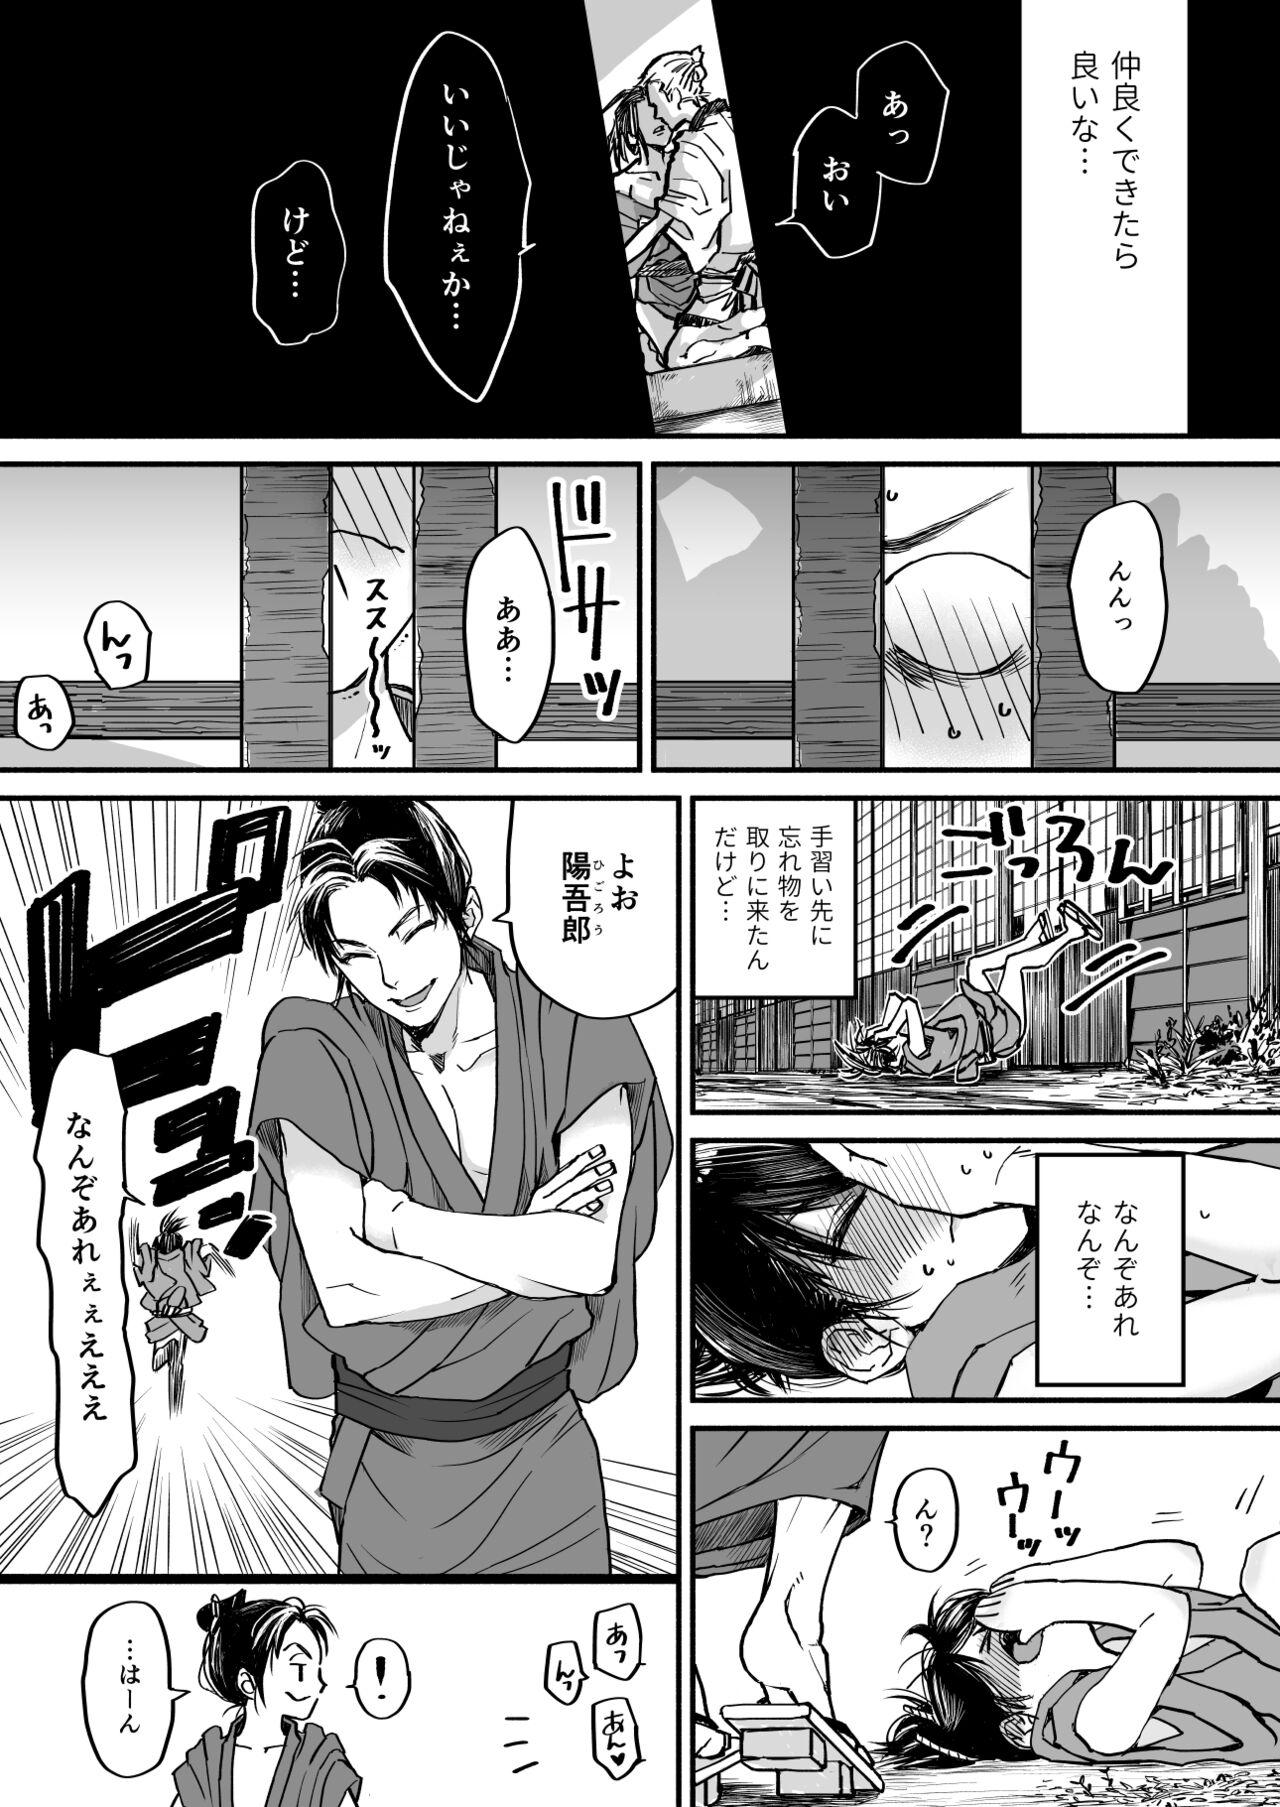 Grande Gikei to Nakayoku? Otona no Sumo Shiyo! - Original Camporn - Page 6